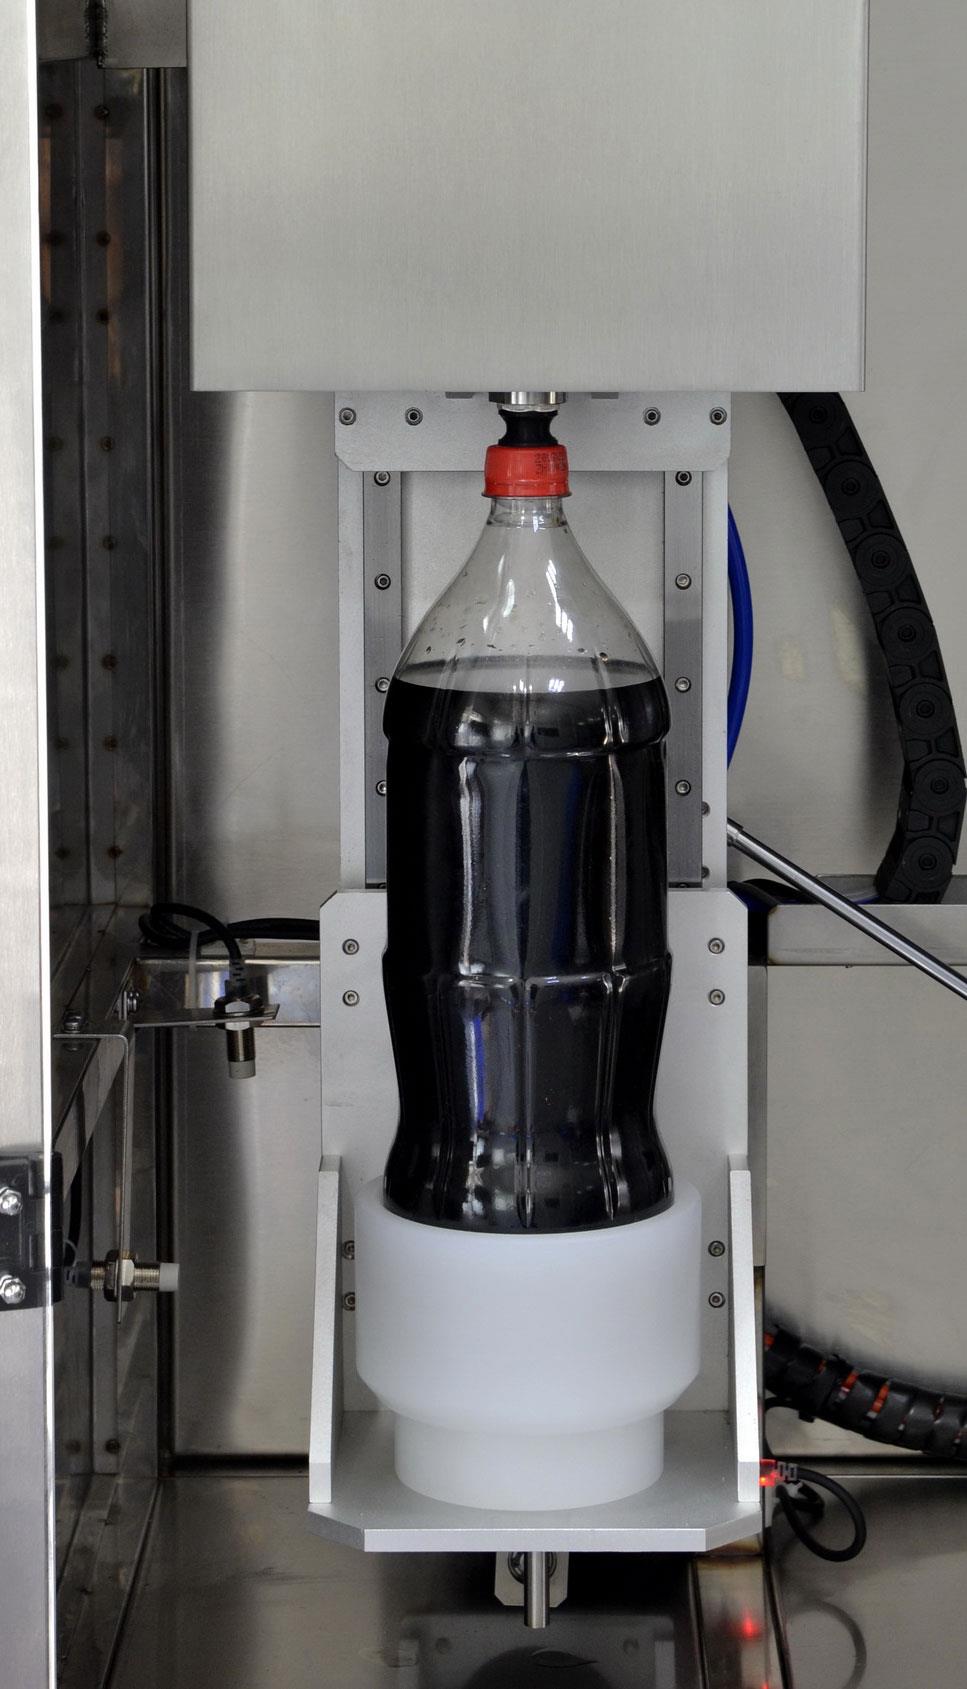 เครื่องวัดปริมาณคาร์บอนไดออกไซด์ในเครื่องดื่มบรรจุ ขวดแก้ว / PET และกระป๋อง อัตโนมัติ